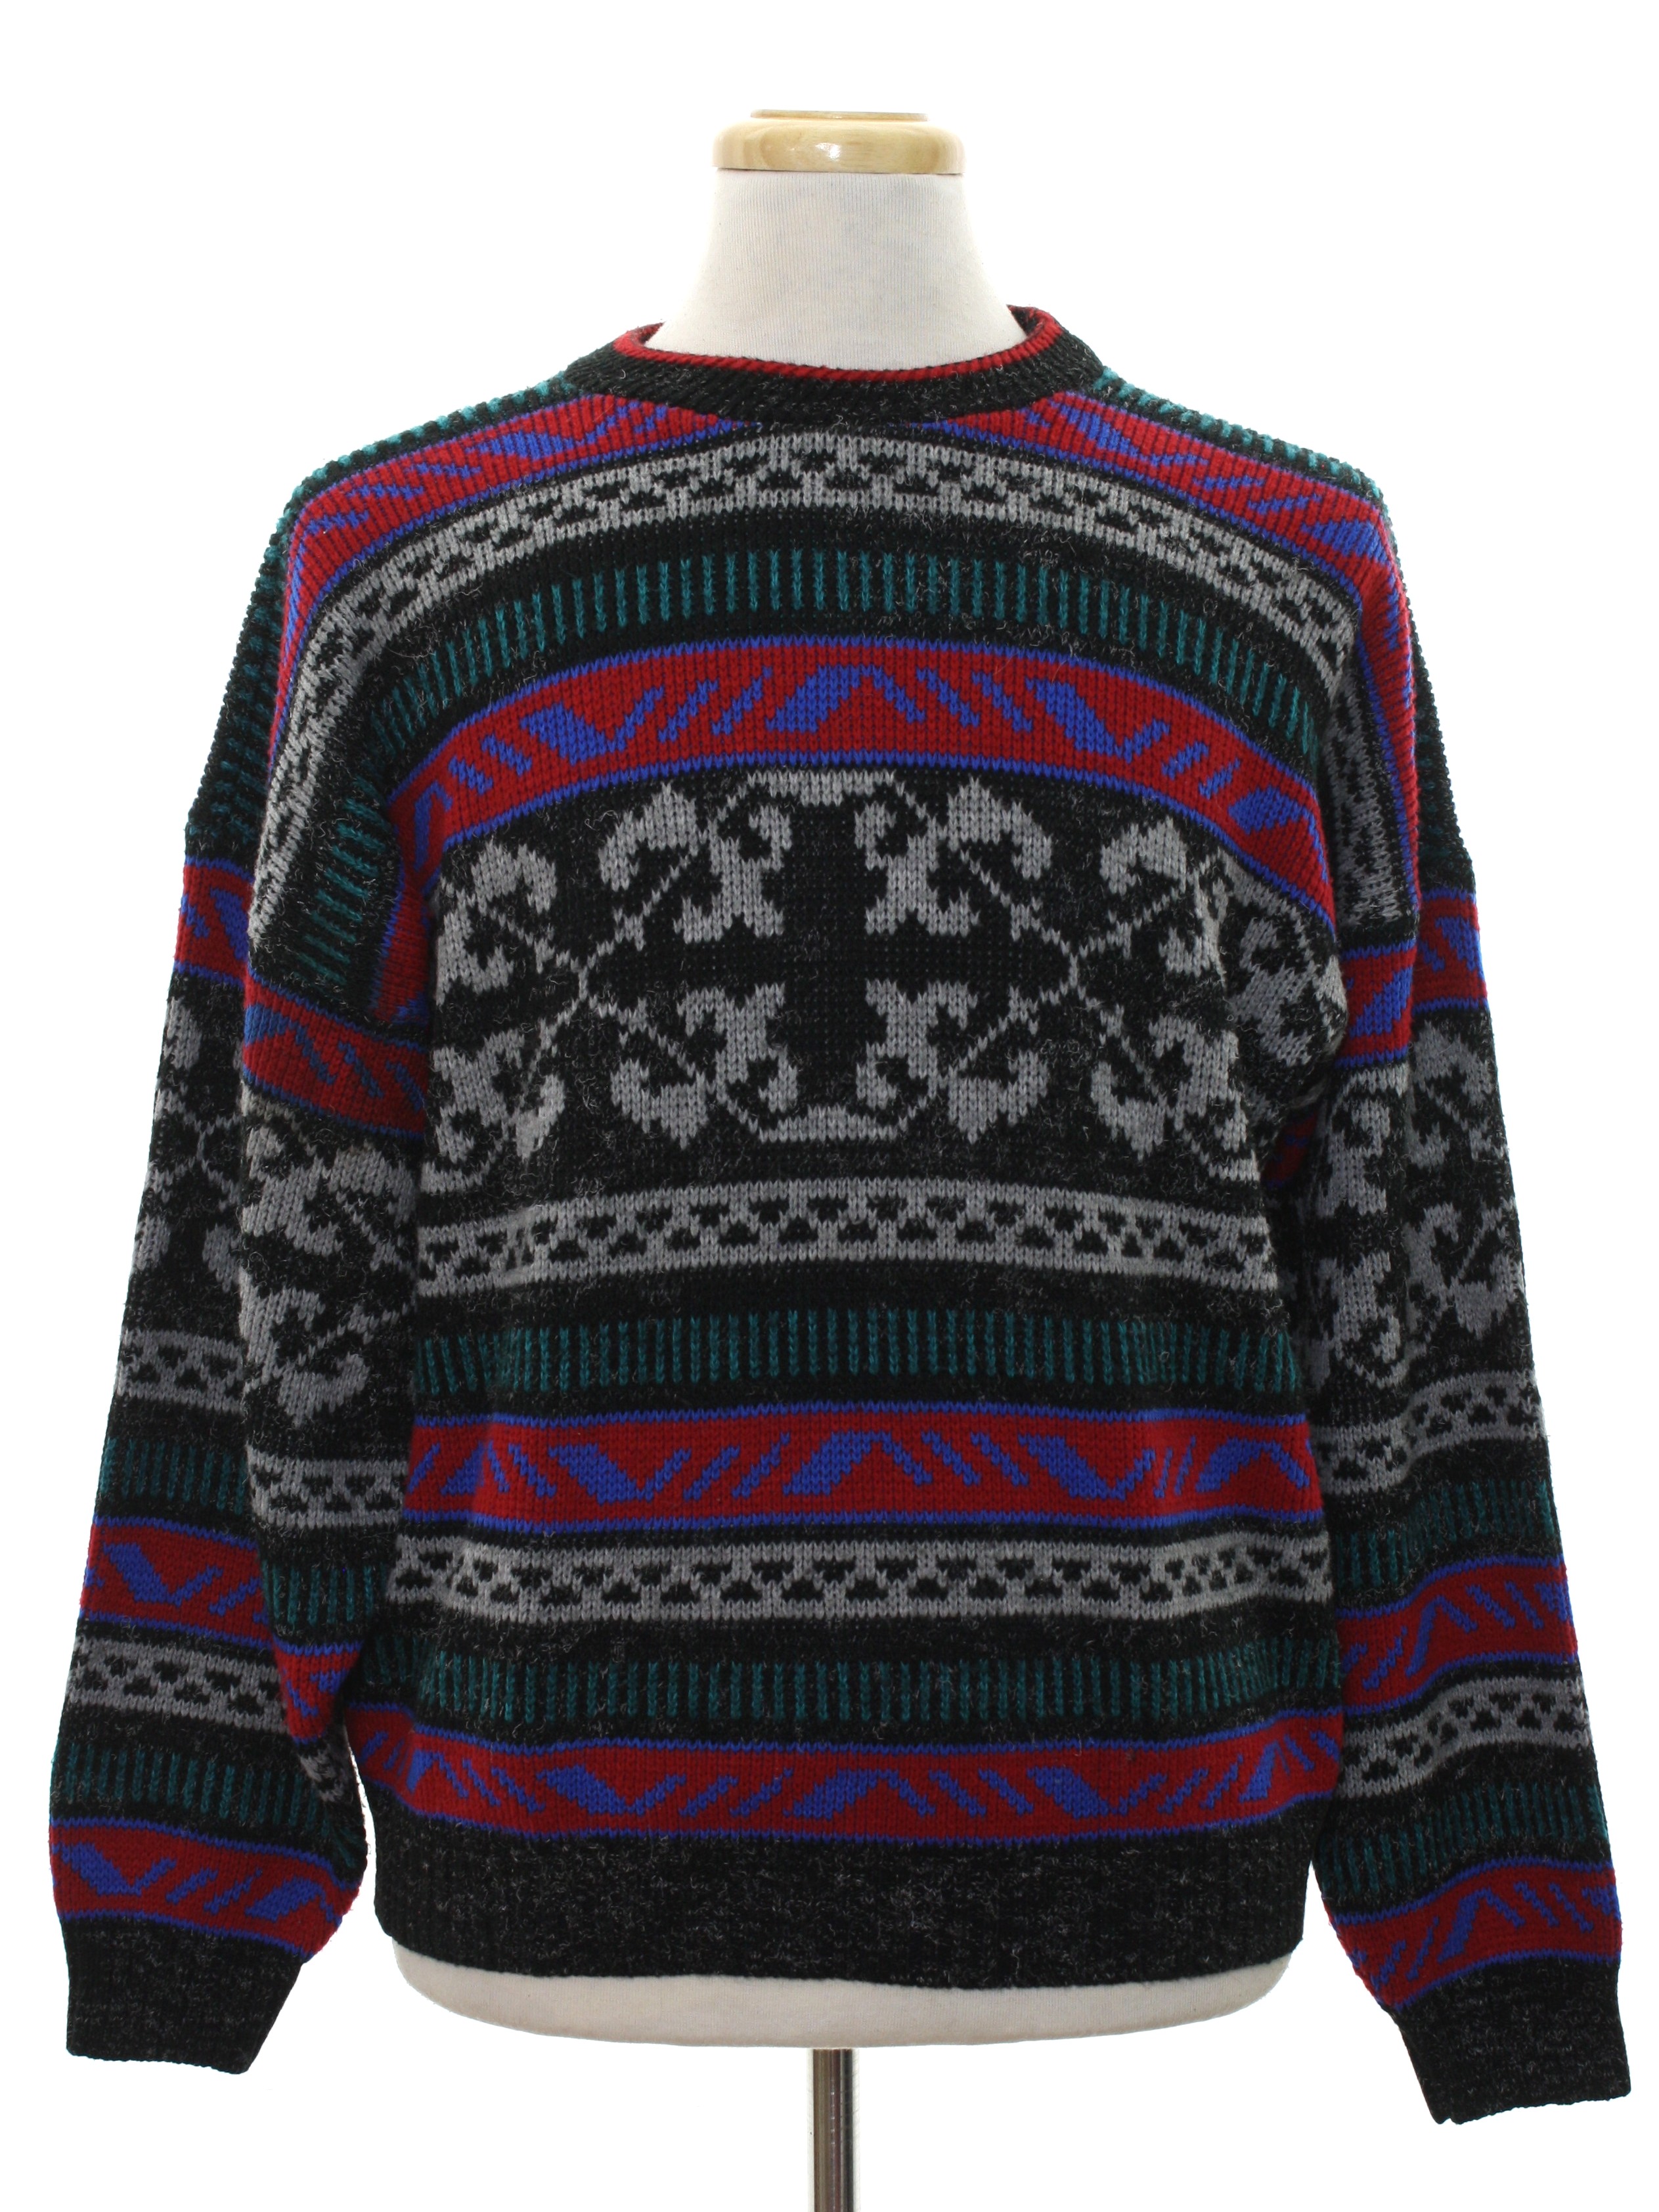 Eighties New Era Sweater: 80s -New Era- Mens heathered black background ...